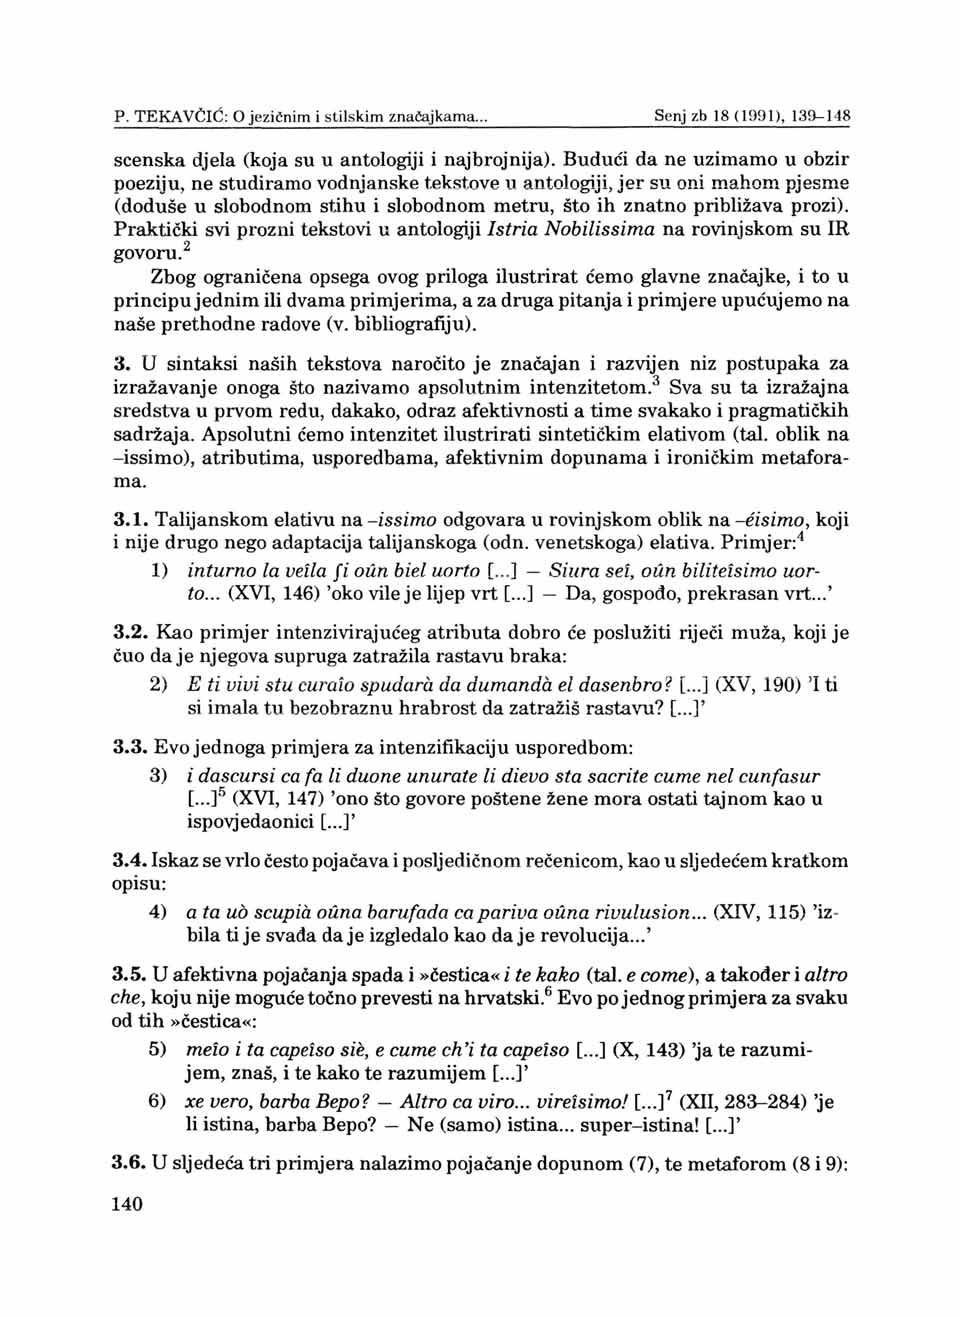 P. TEKAVĆIĆ: 0 jezičnim i stilskim značajkama... Senjzb 18(1991), 139-148 scenska djela (koja su u antologiji i najbrojnija).